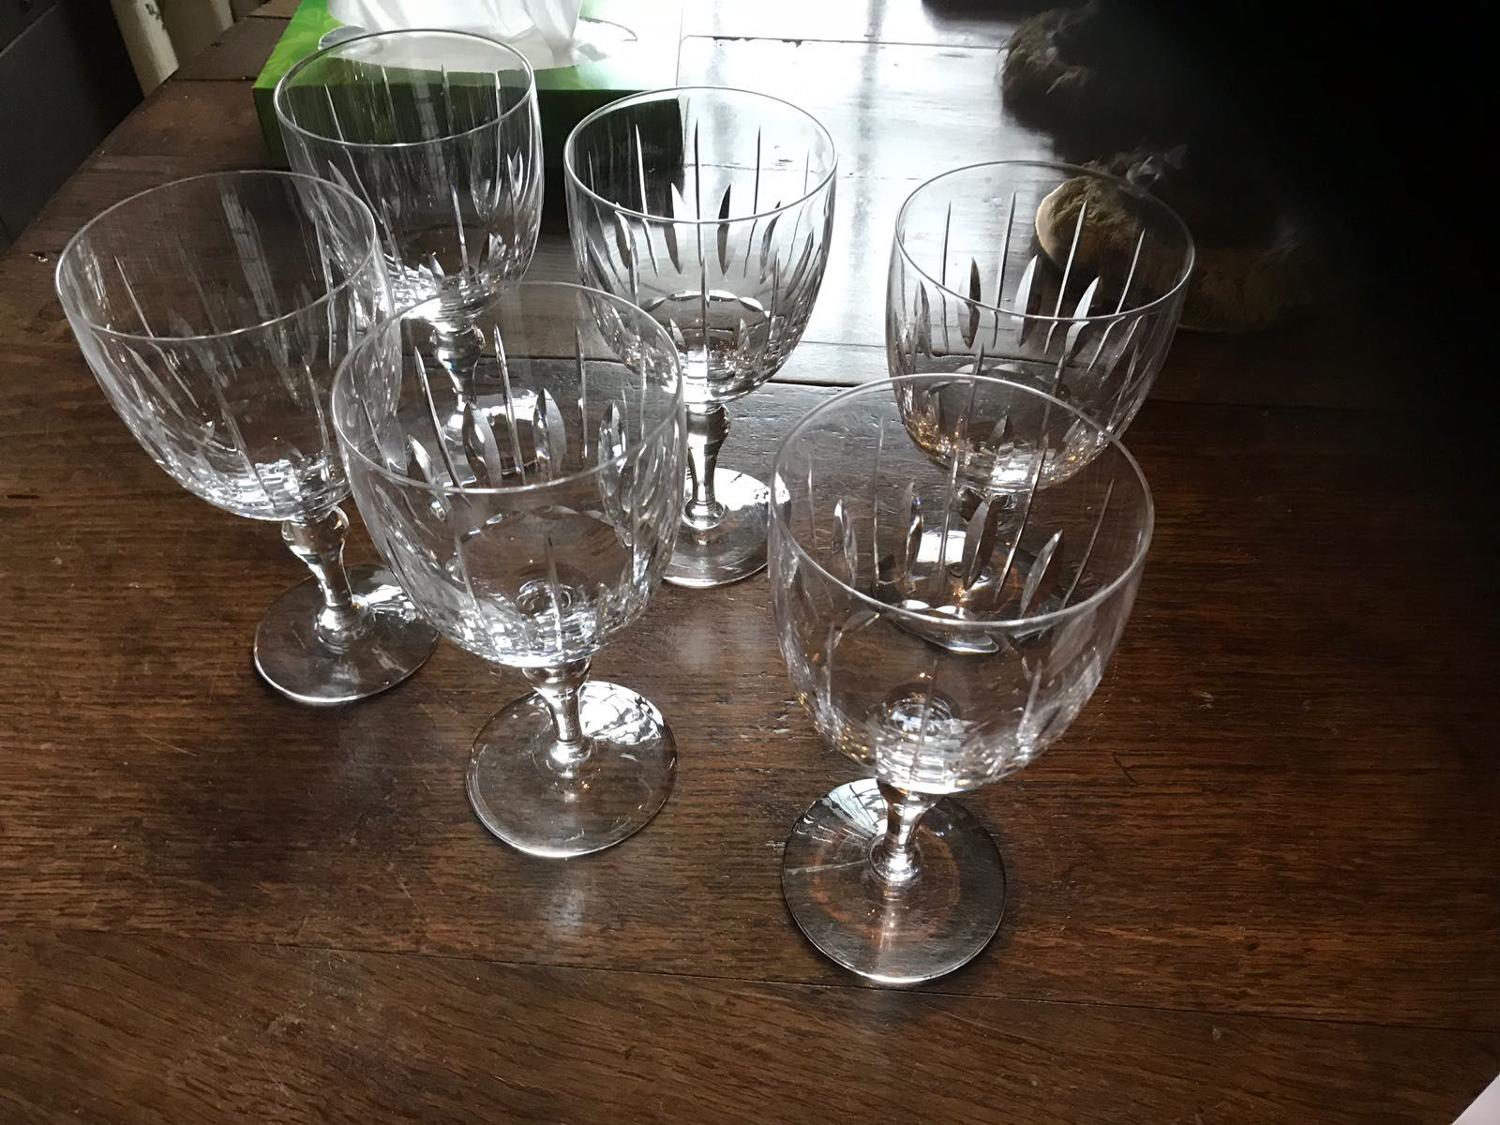 A set of wine glasses